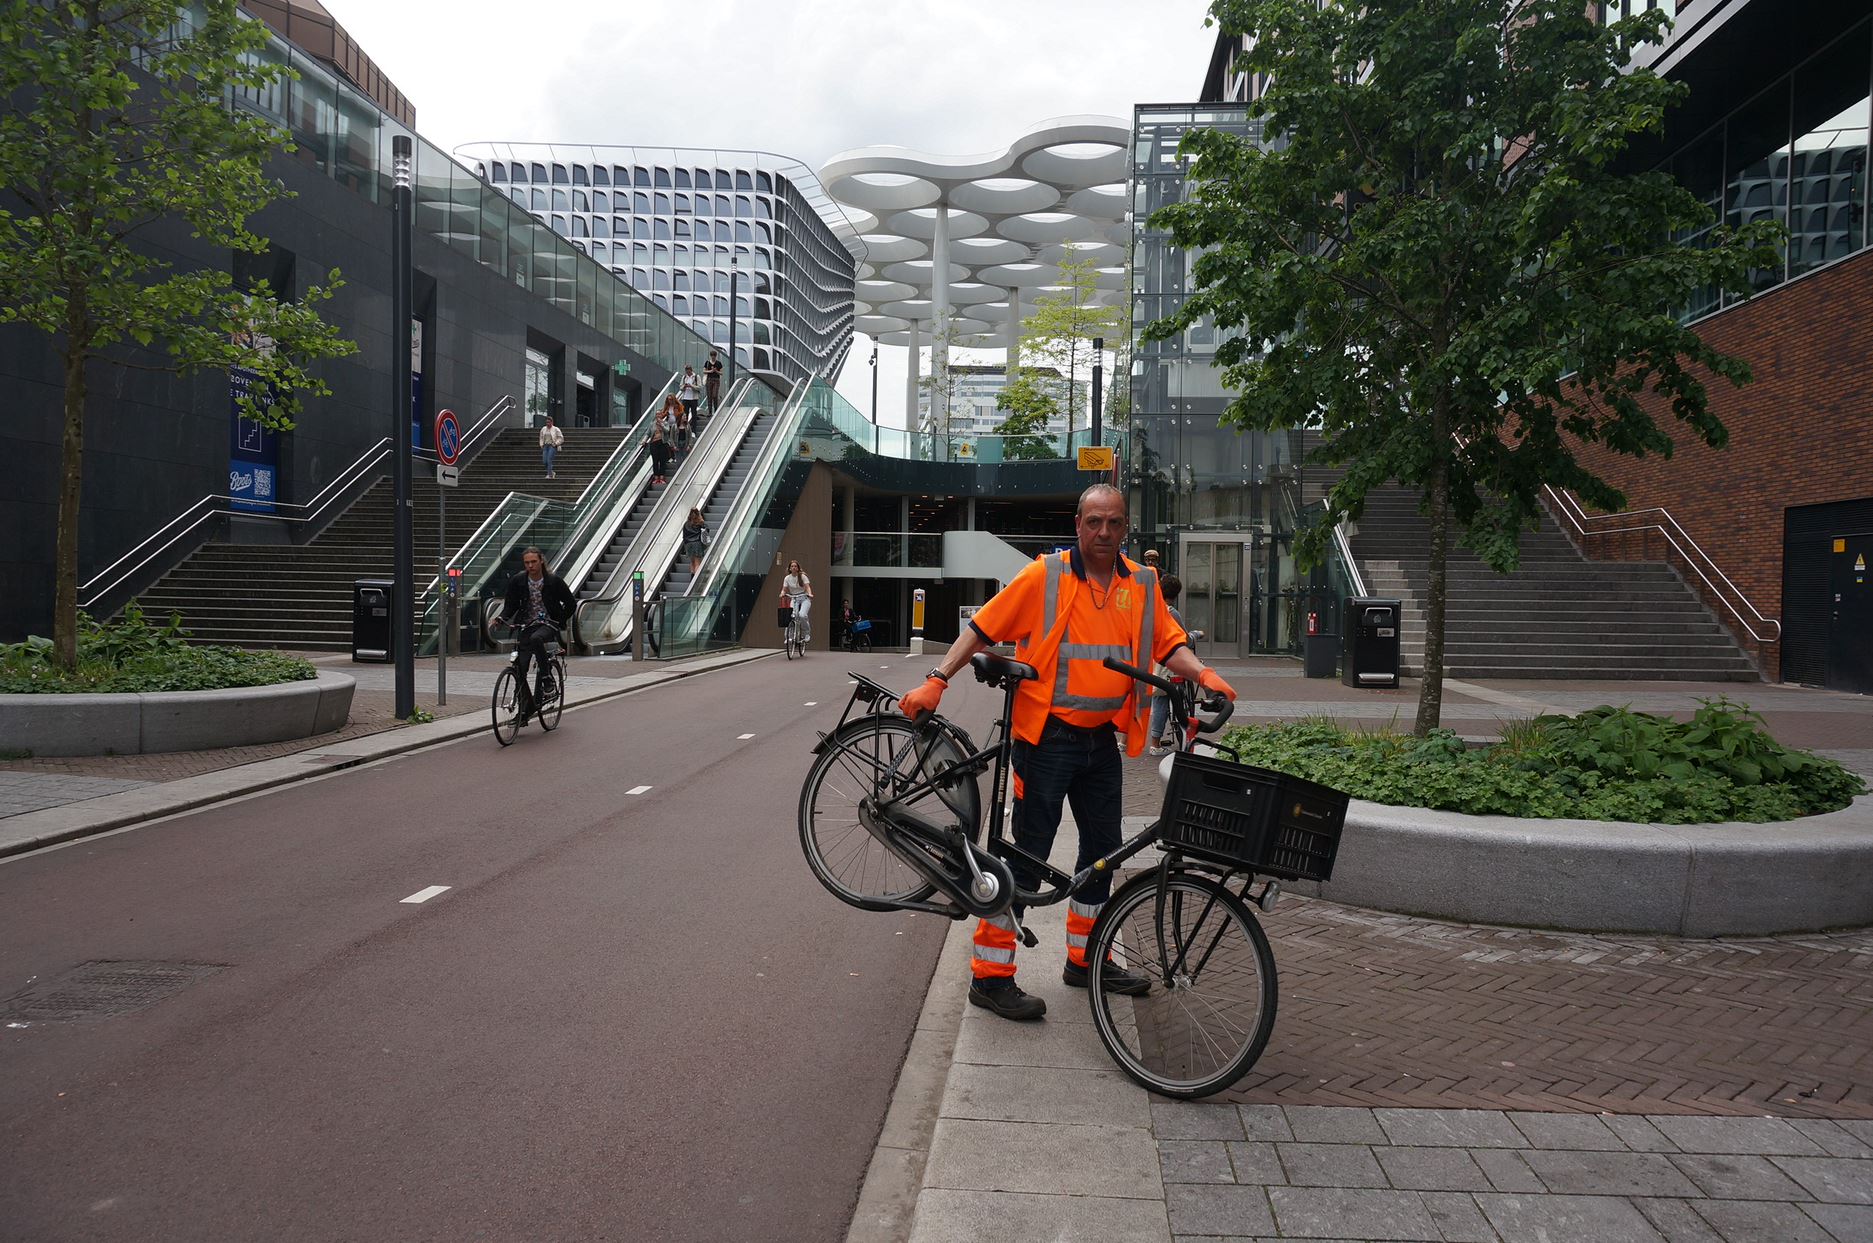 Garons nous deux minutes : le stationnement vélo - Amsterdam Air